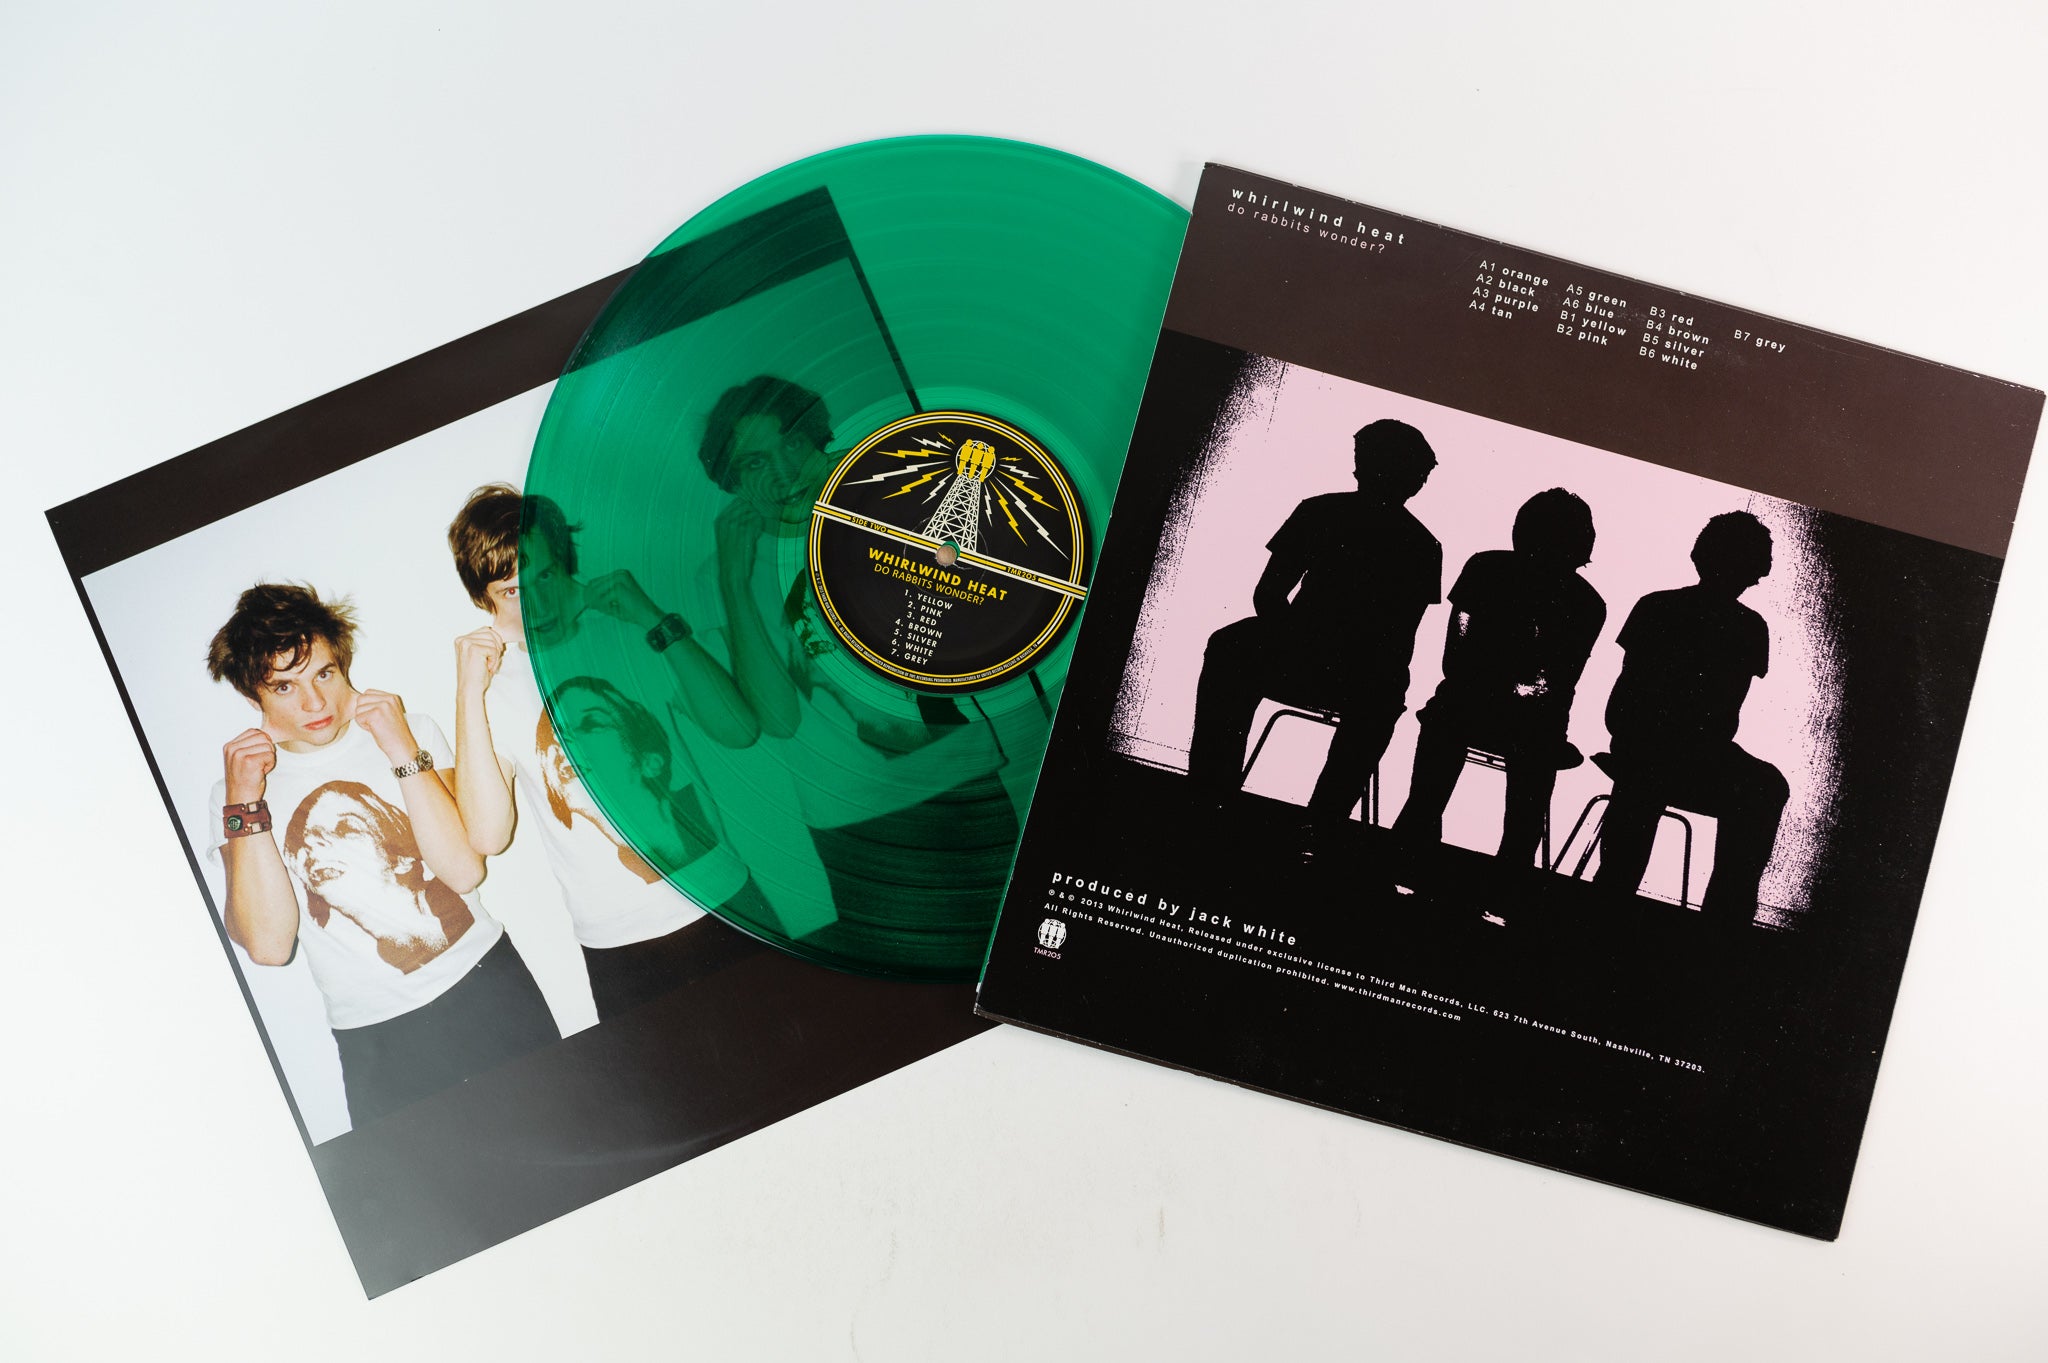 Whirlwind Heat - Do Rabbits Wonder on Third Man Green Vinyl Reissue